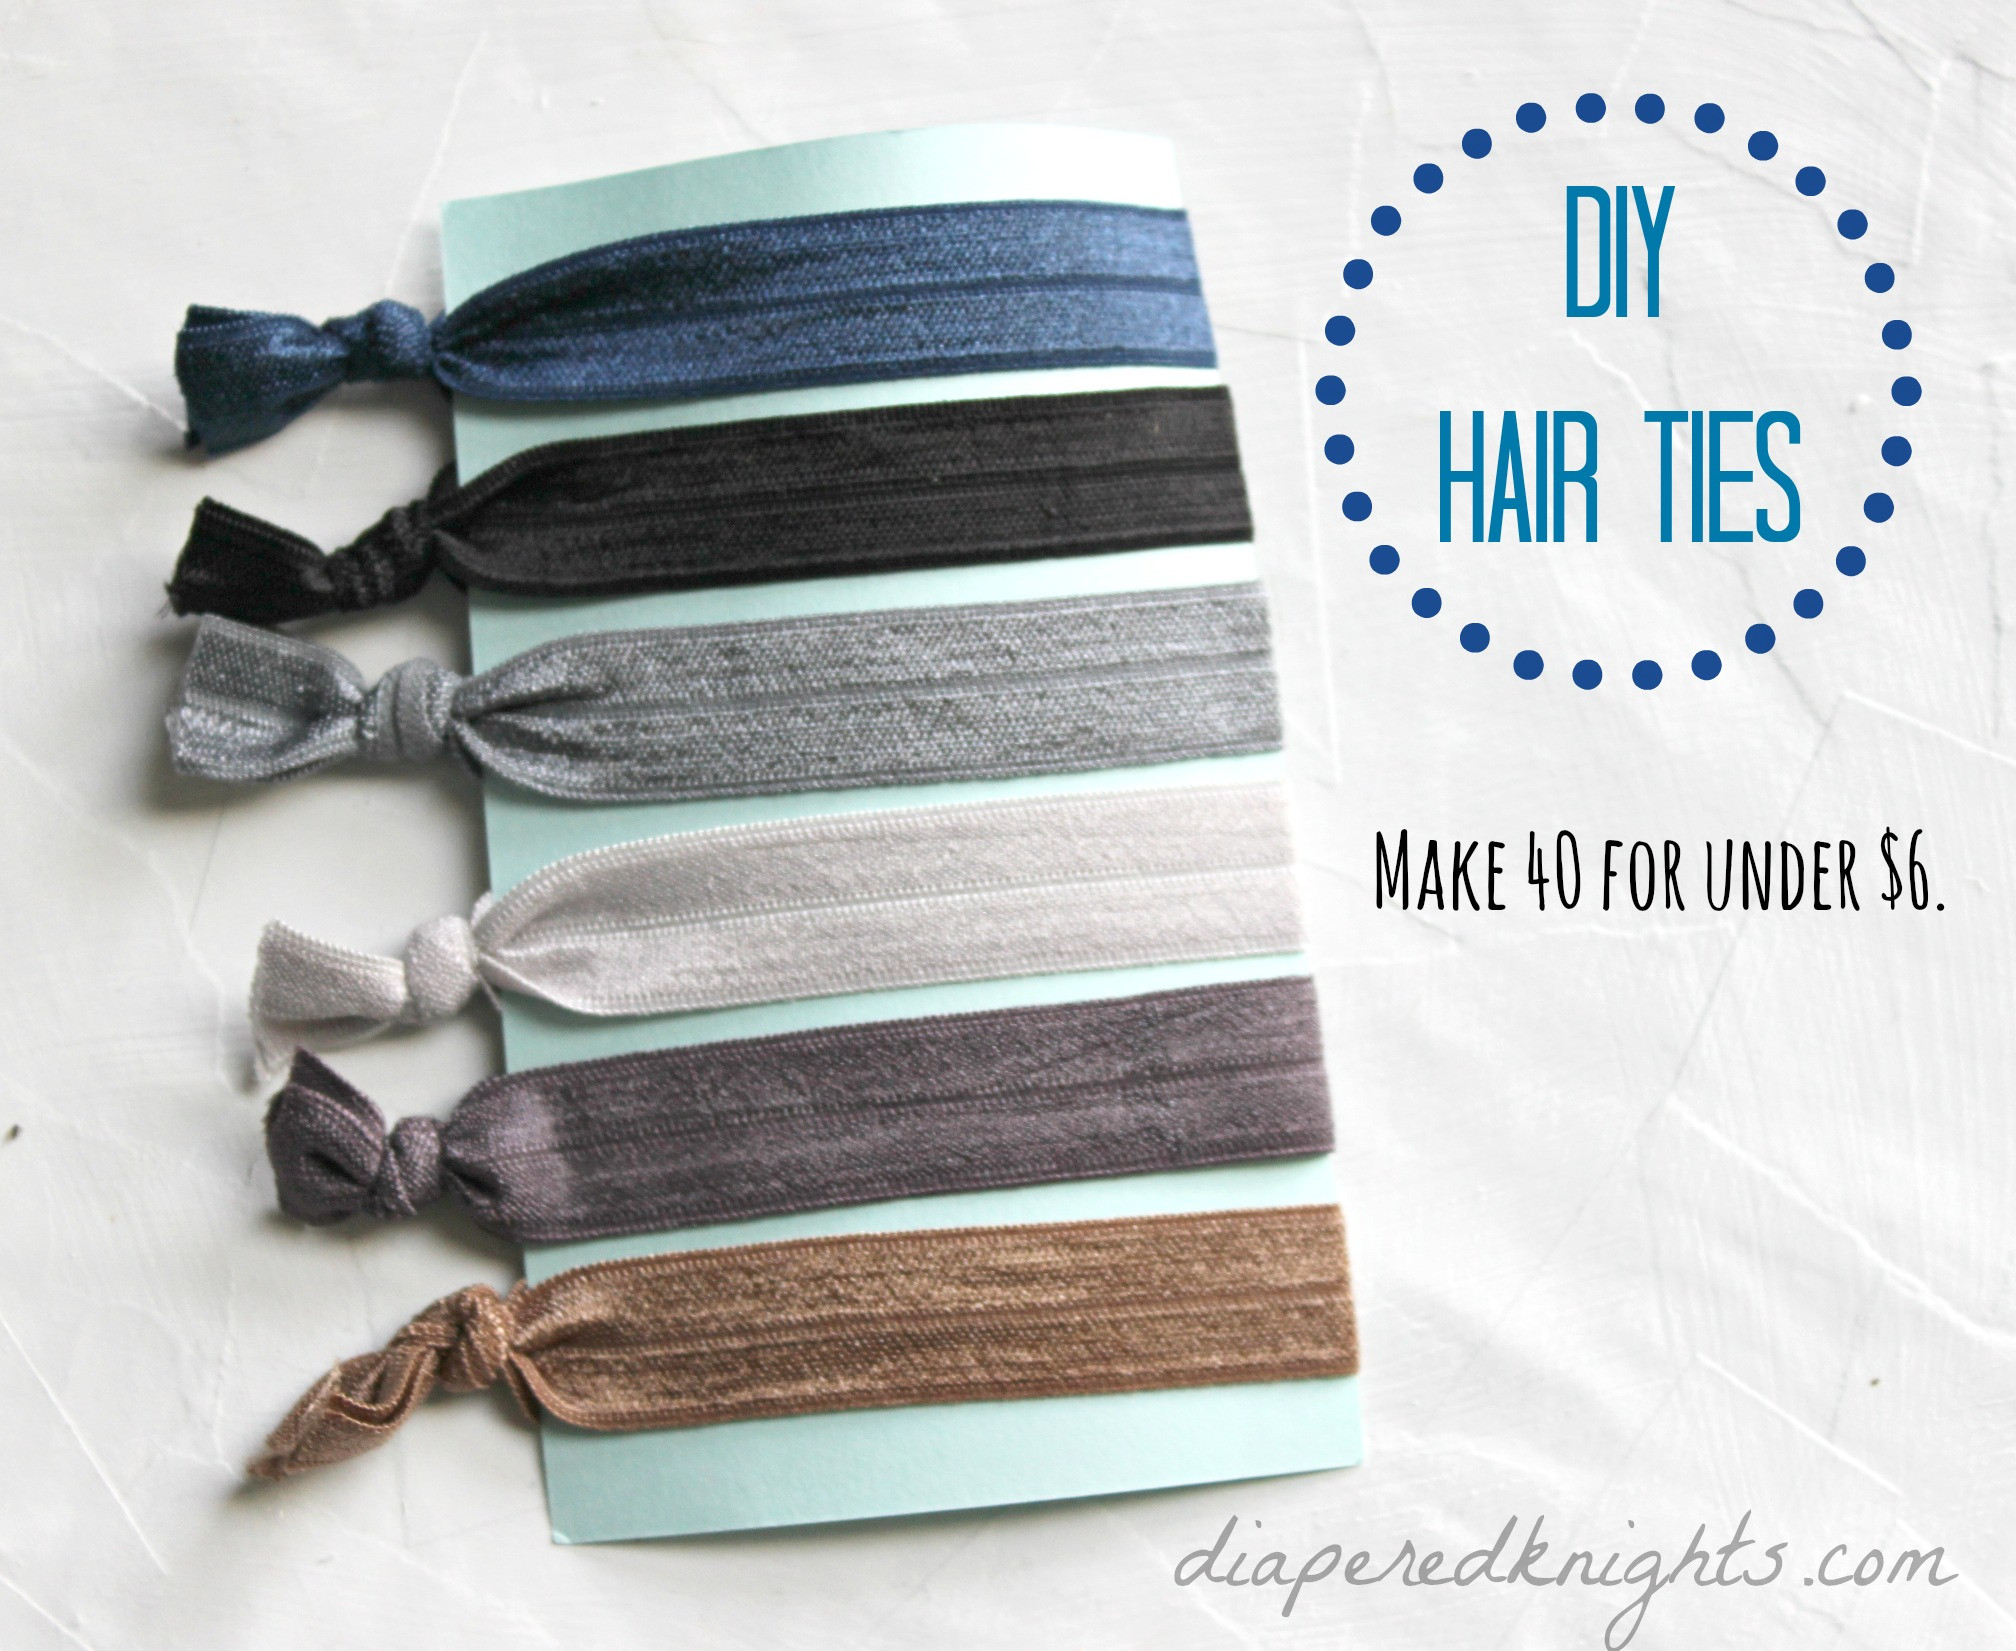 Best ideas about DIY Elastic Hair Tie
. Save or Pin DIY Elastic Hair Ties Now.